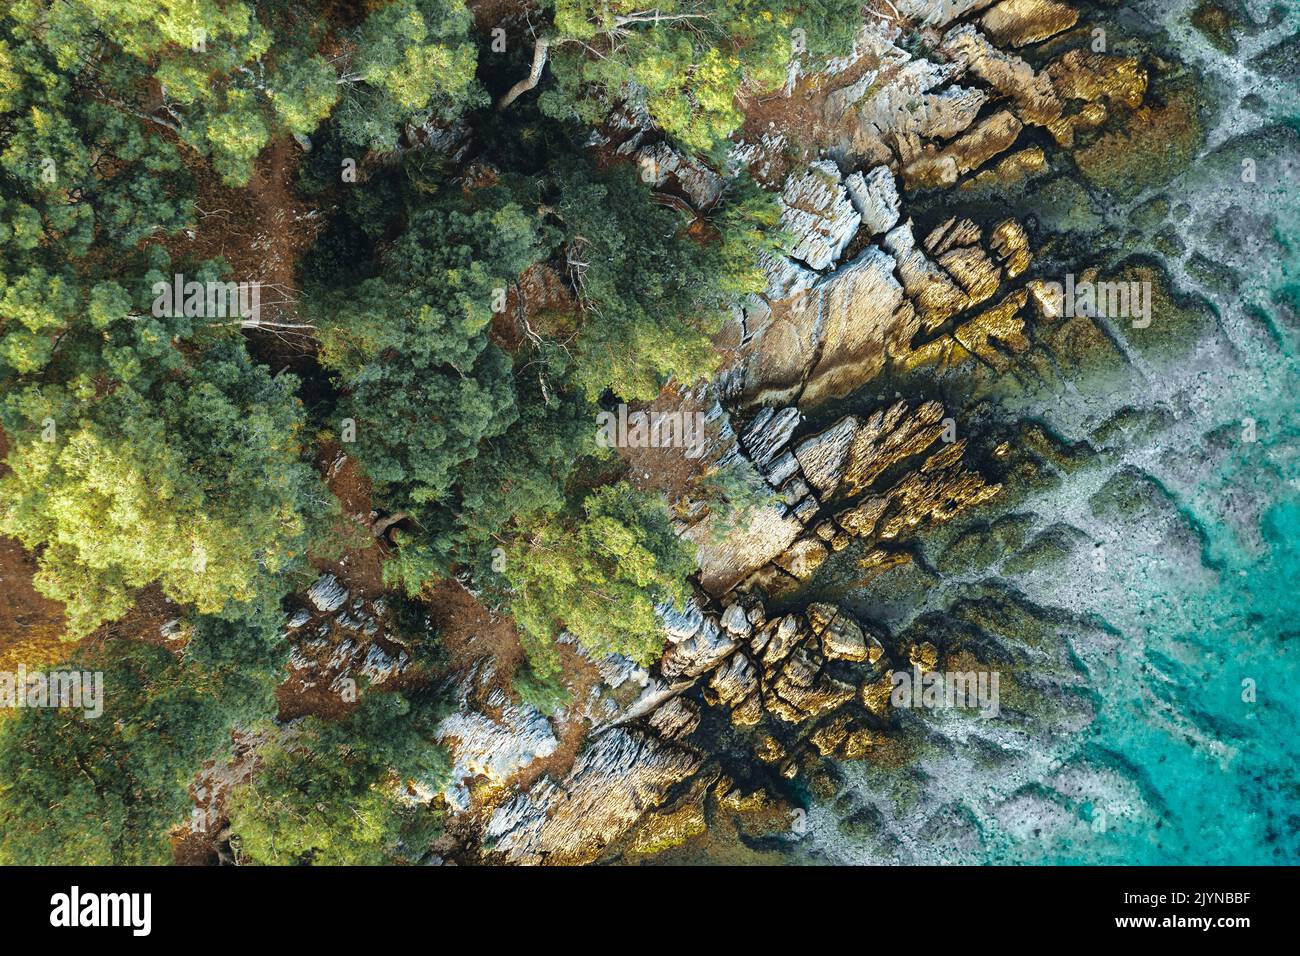 Vista aerea dall'alto verso il basso di una spiaggia esotica con acqua di mare turchese, rocce bianche e foresta verde. Spiaggia situata sul mare Adriatico, Europa, Croazia Foto Stock